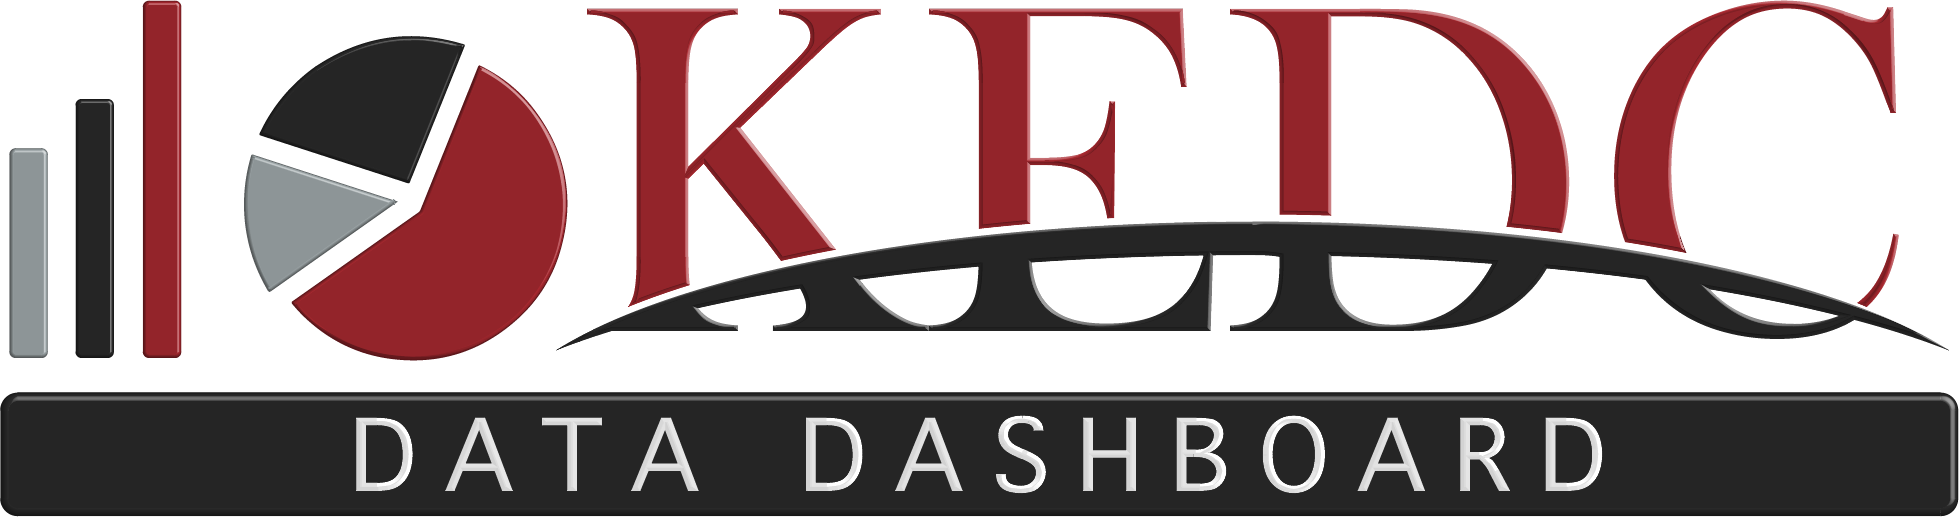 KEDC Data Dashboard